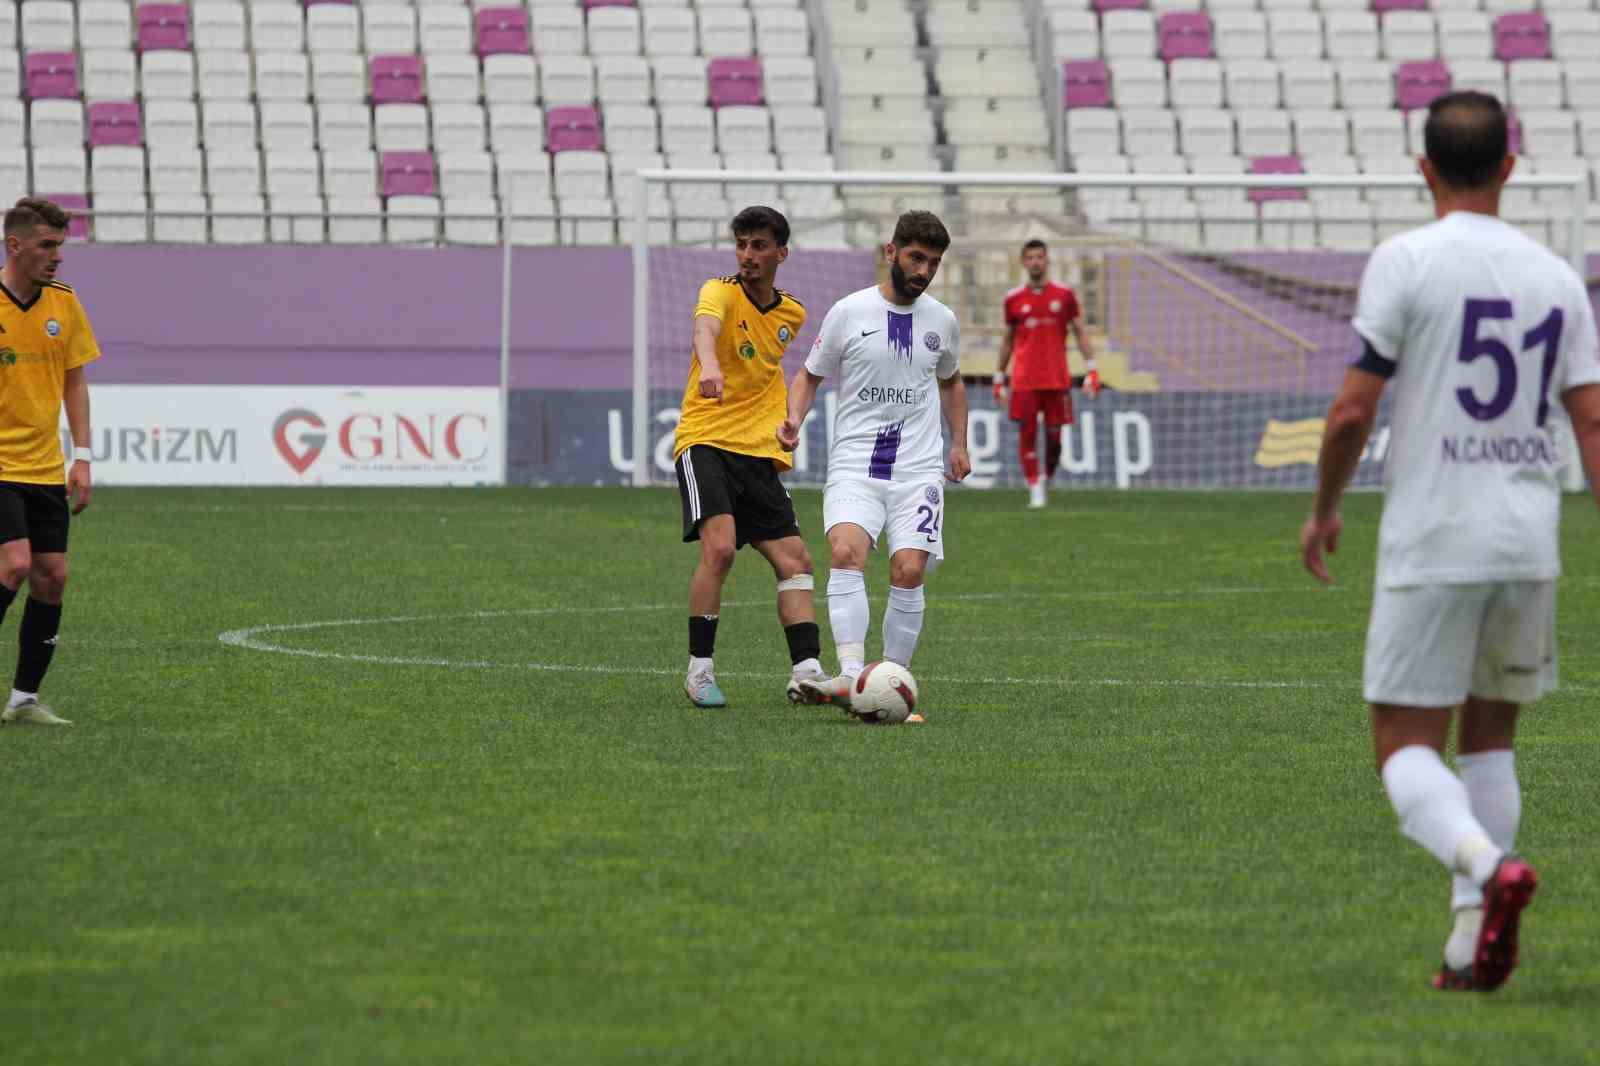 TFF 3. Lig: 52 Orduspor: 3 - Küçükçekmece Sinopspor: 3
